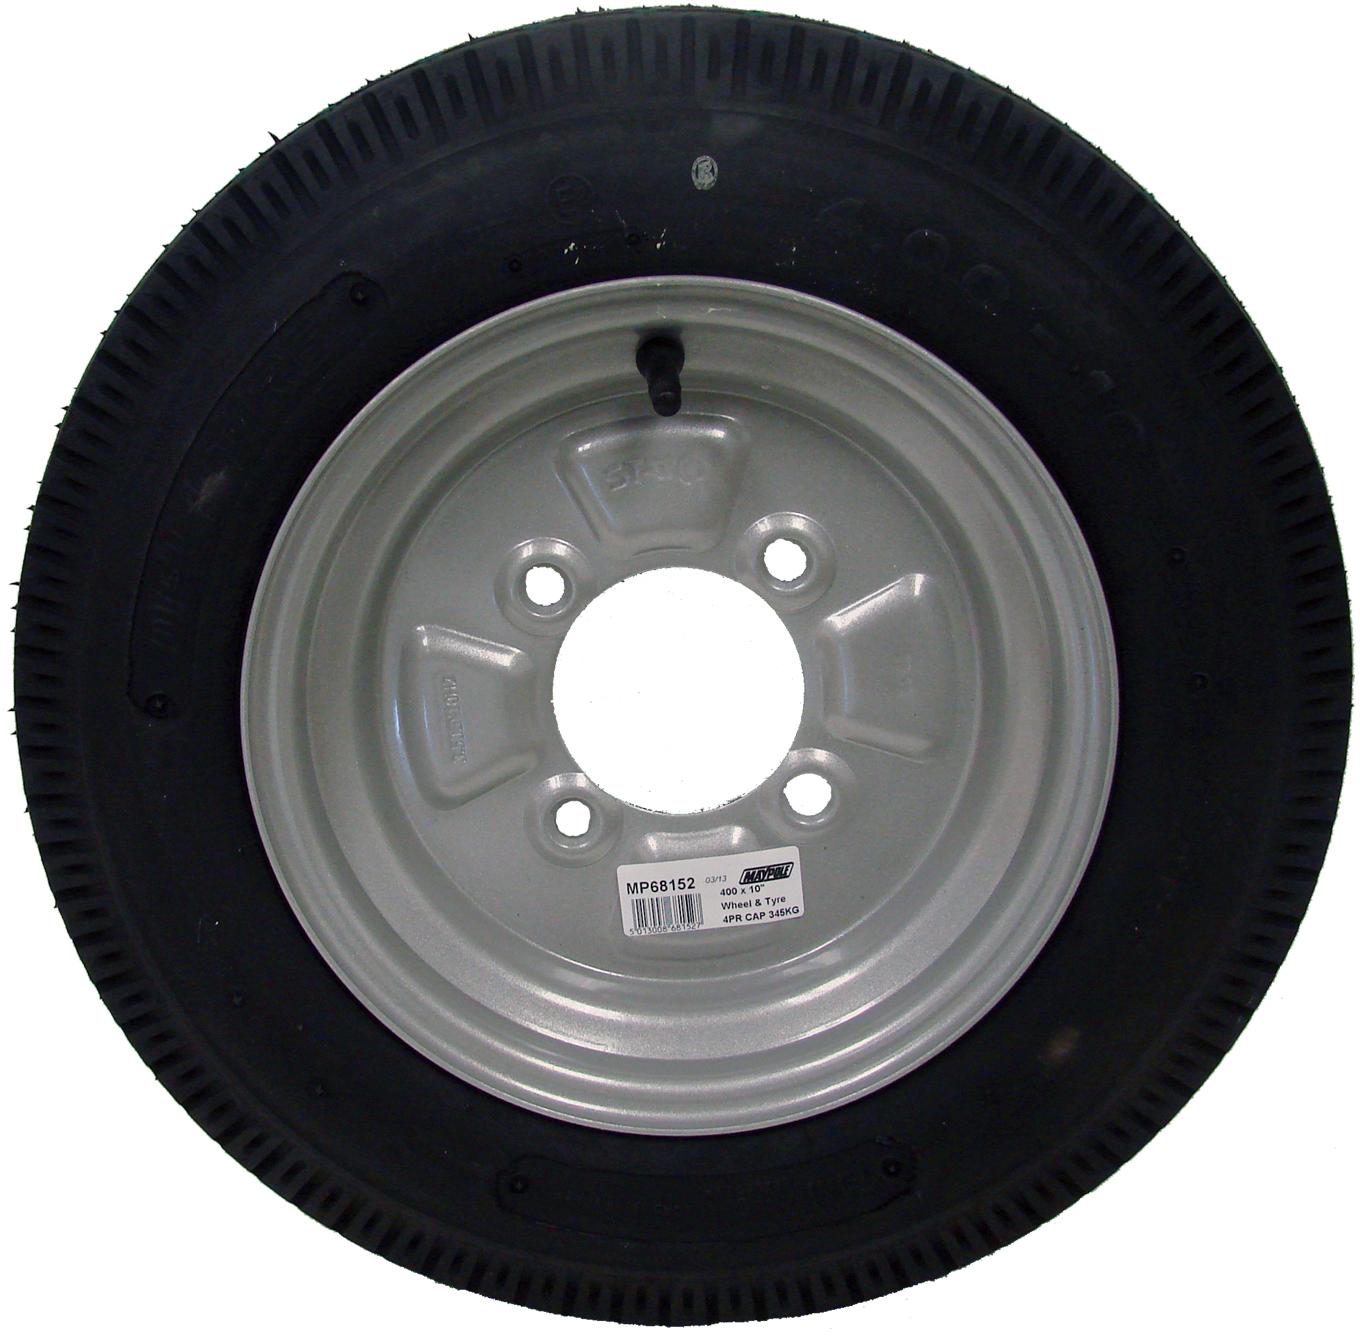 Maypole Spare Wheel Mp6815 - Large